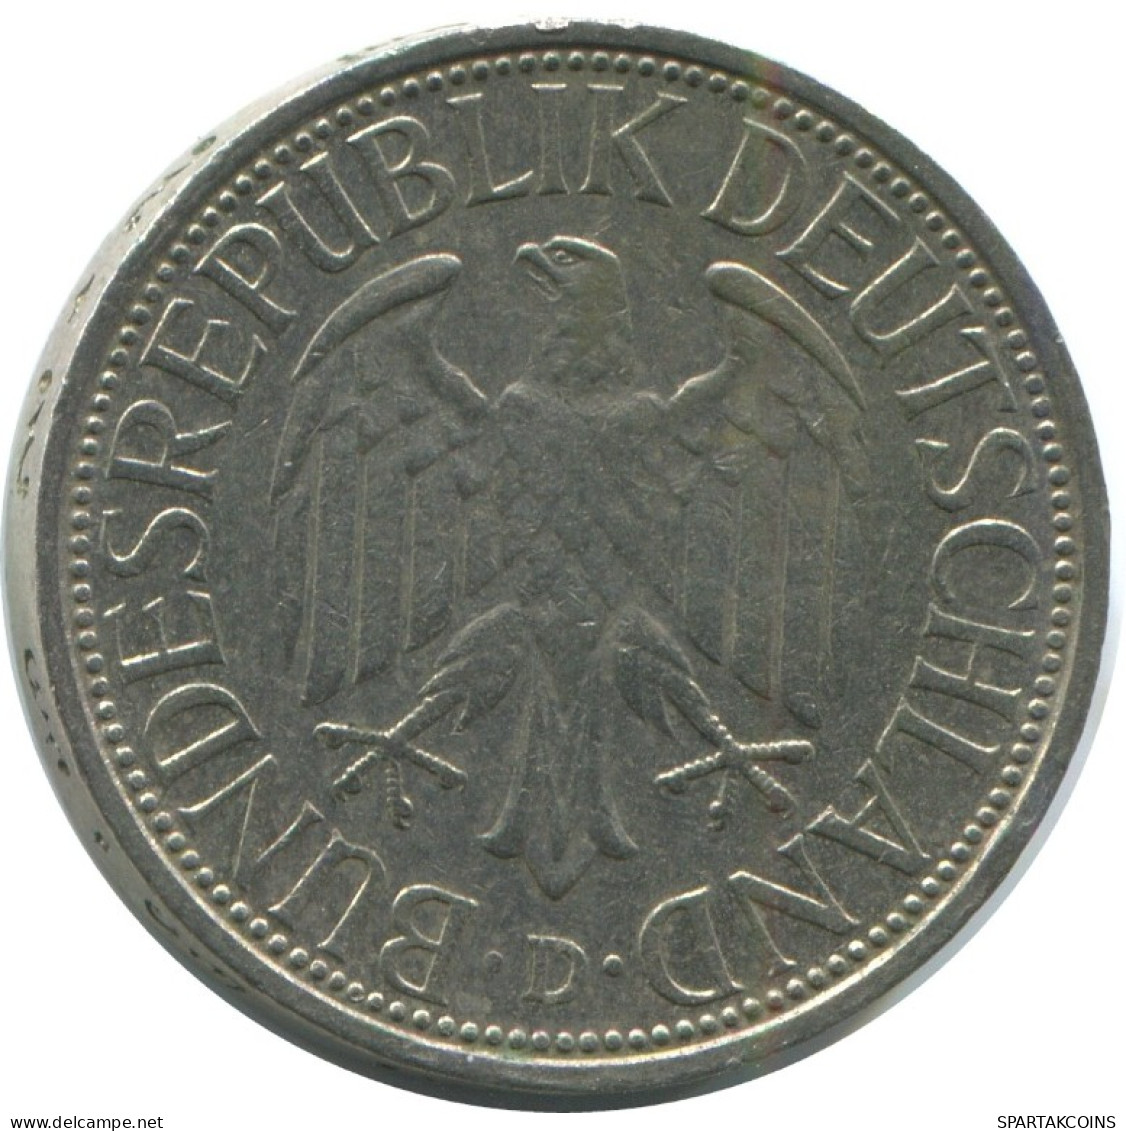 1 DM 1973 D BRD DEUTSCHLAND Münze GERMANY #AG305.3.D.A - 1 Marco